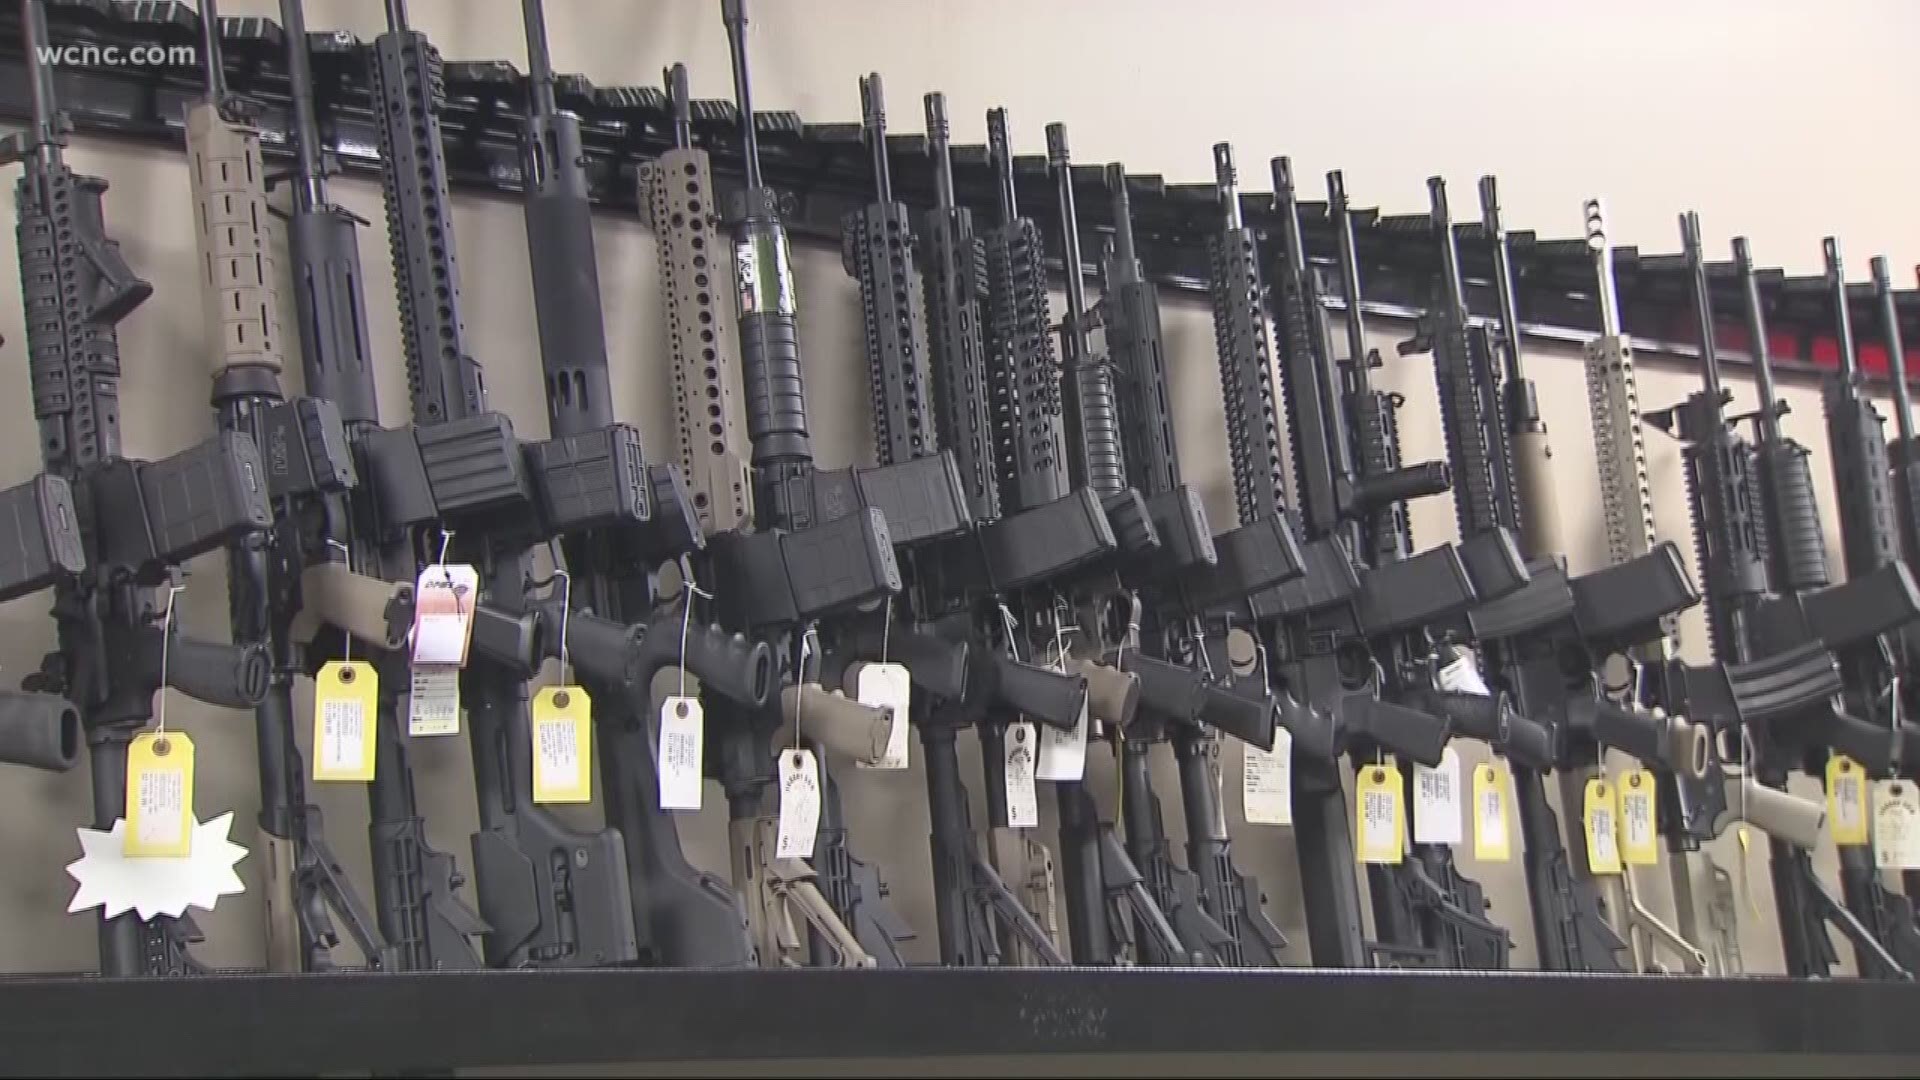 NC bill limits gun rights for dementia patients